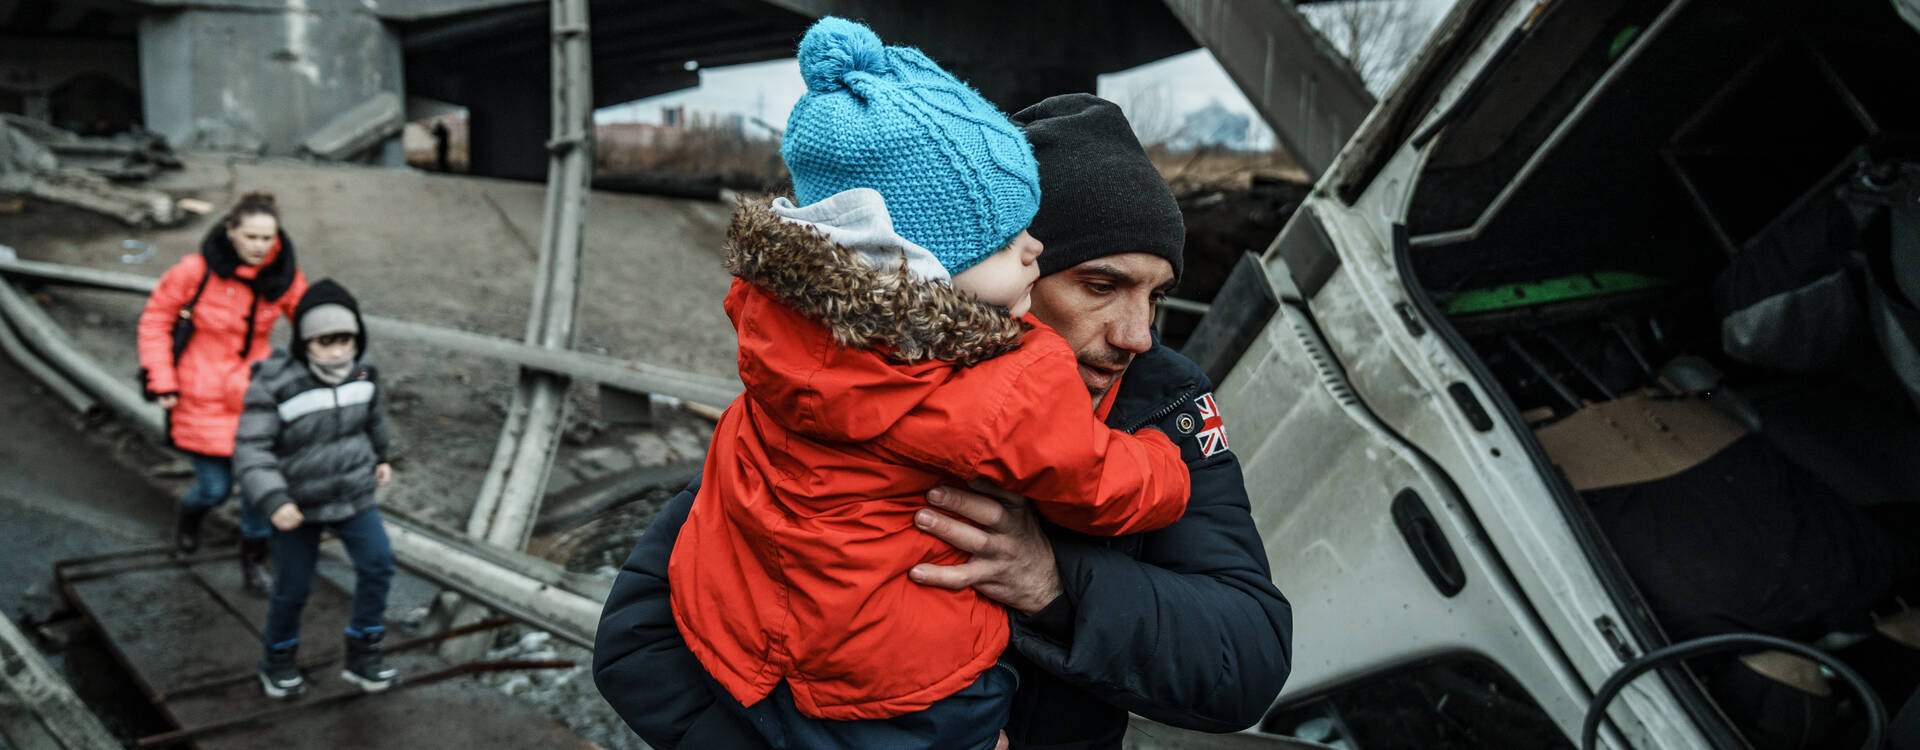 Krieg Ukraine: Mann mit Kind auf dem Arm inmitten von Zerstörung. 